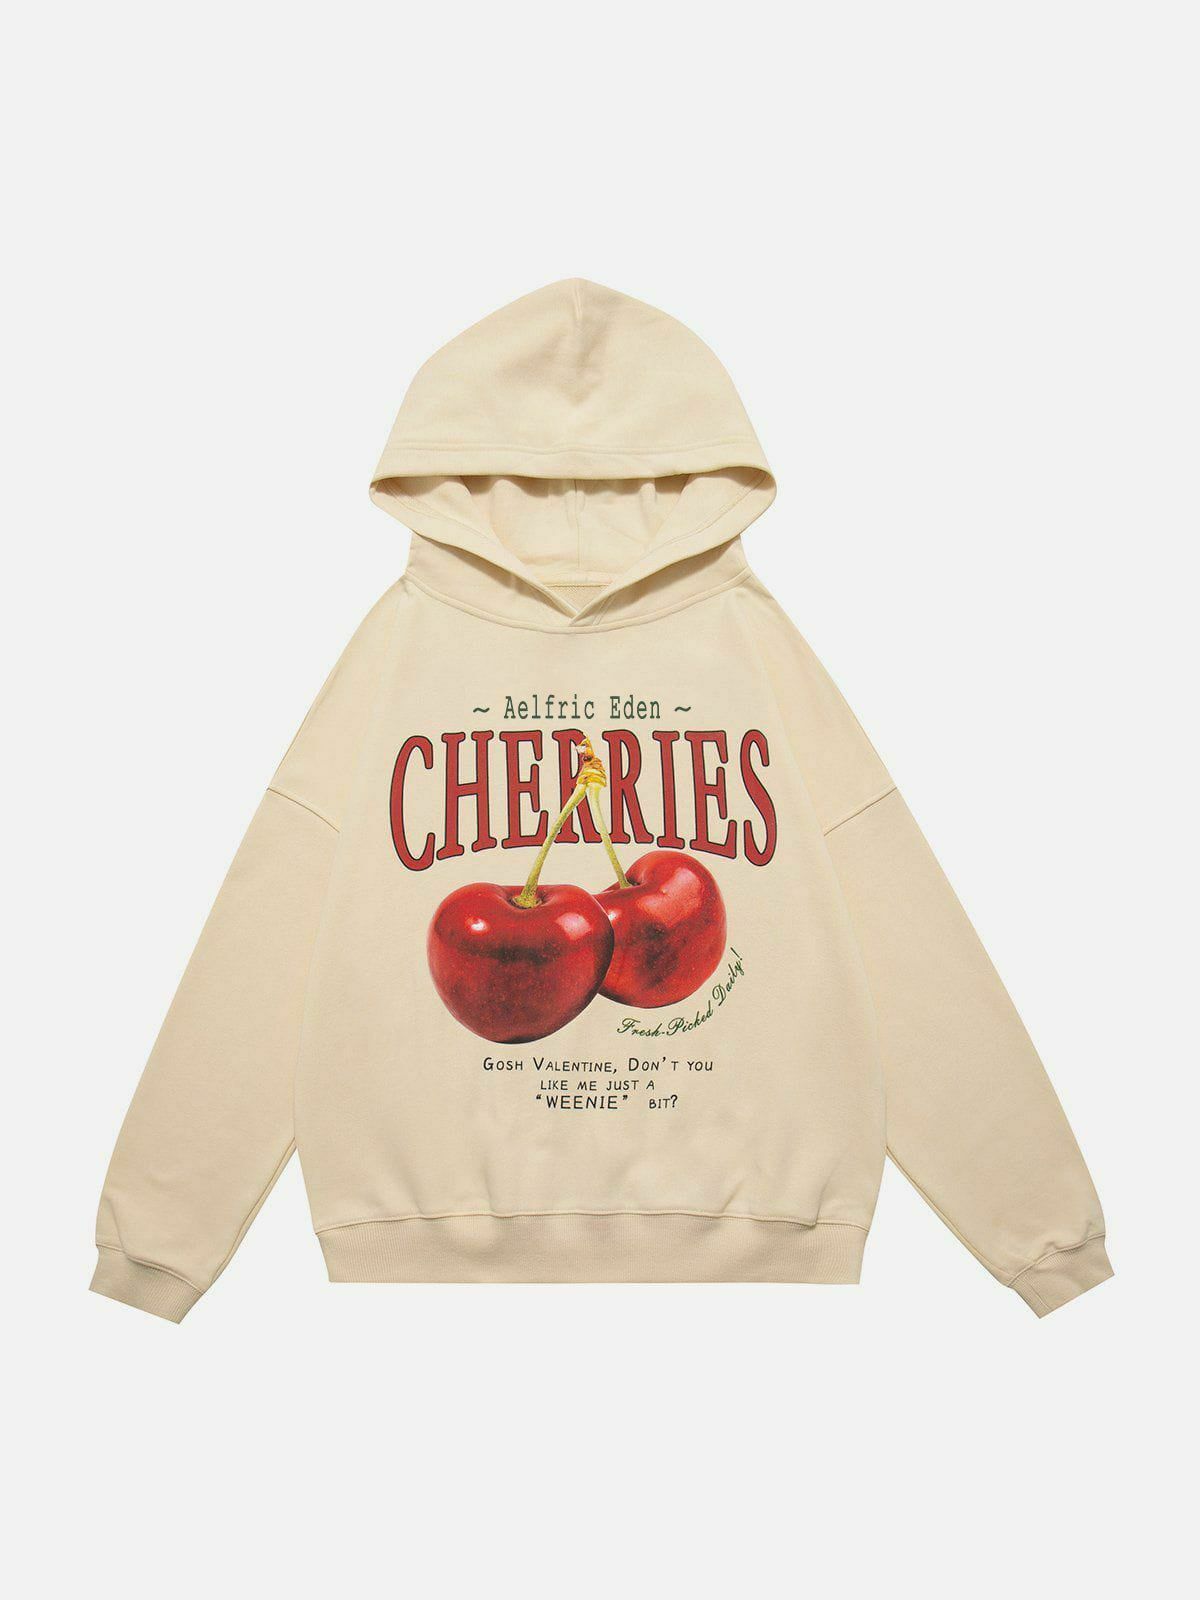 chic cherries hoodie   youthful & trendy streetwear 3475